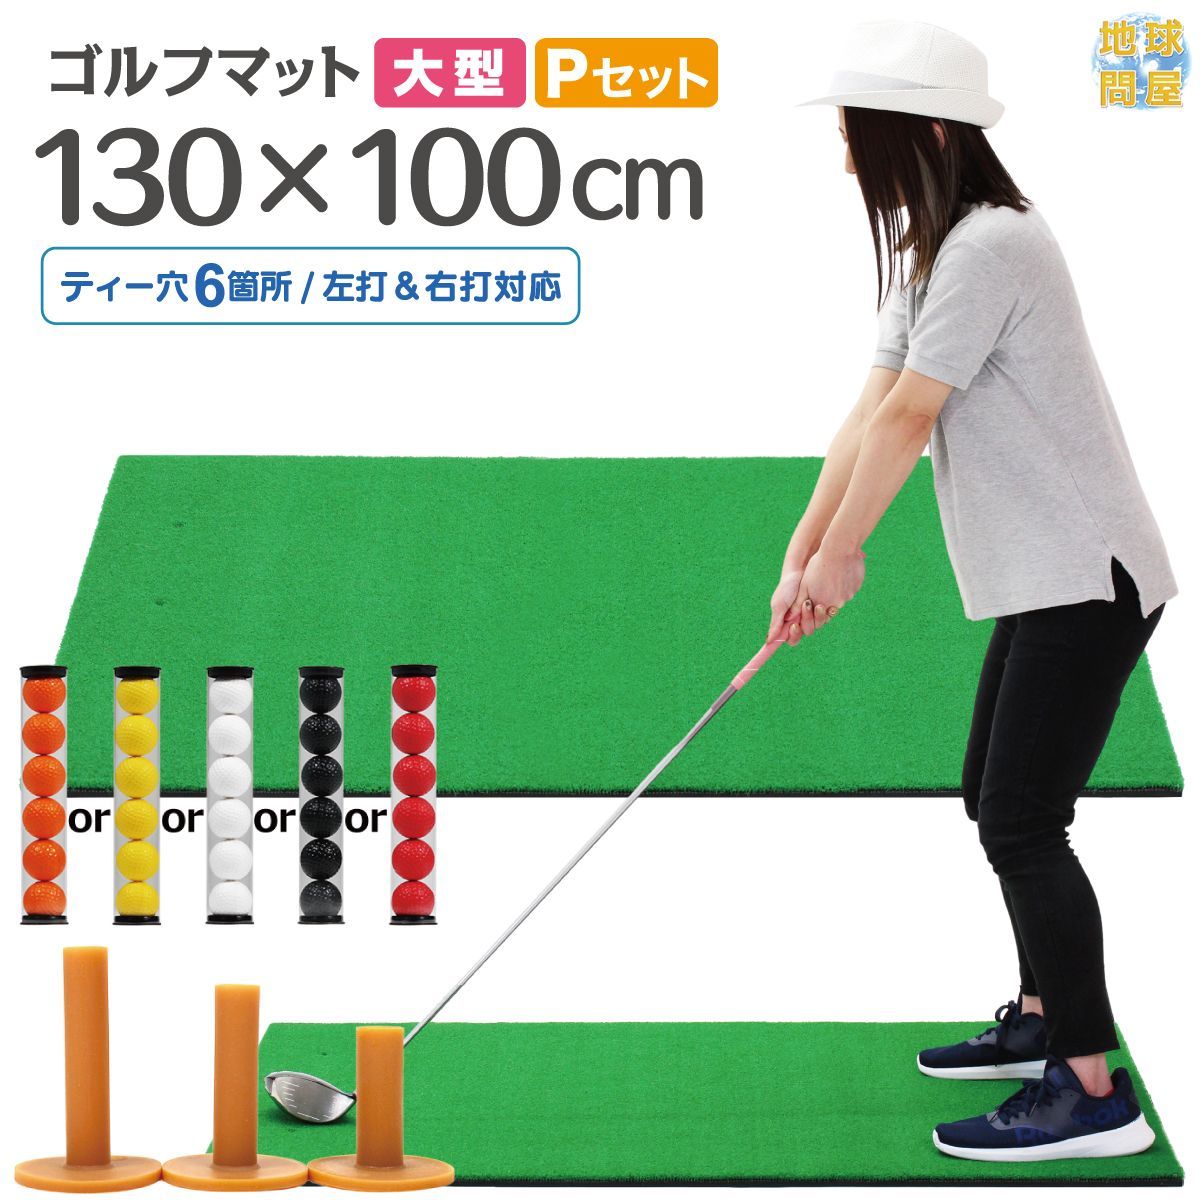 ゴルフマット 大型 ゴルフ練習マット ゴルフマット ゴルフ用品 - その他